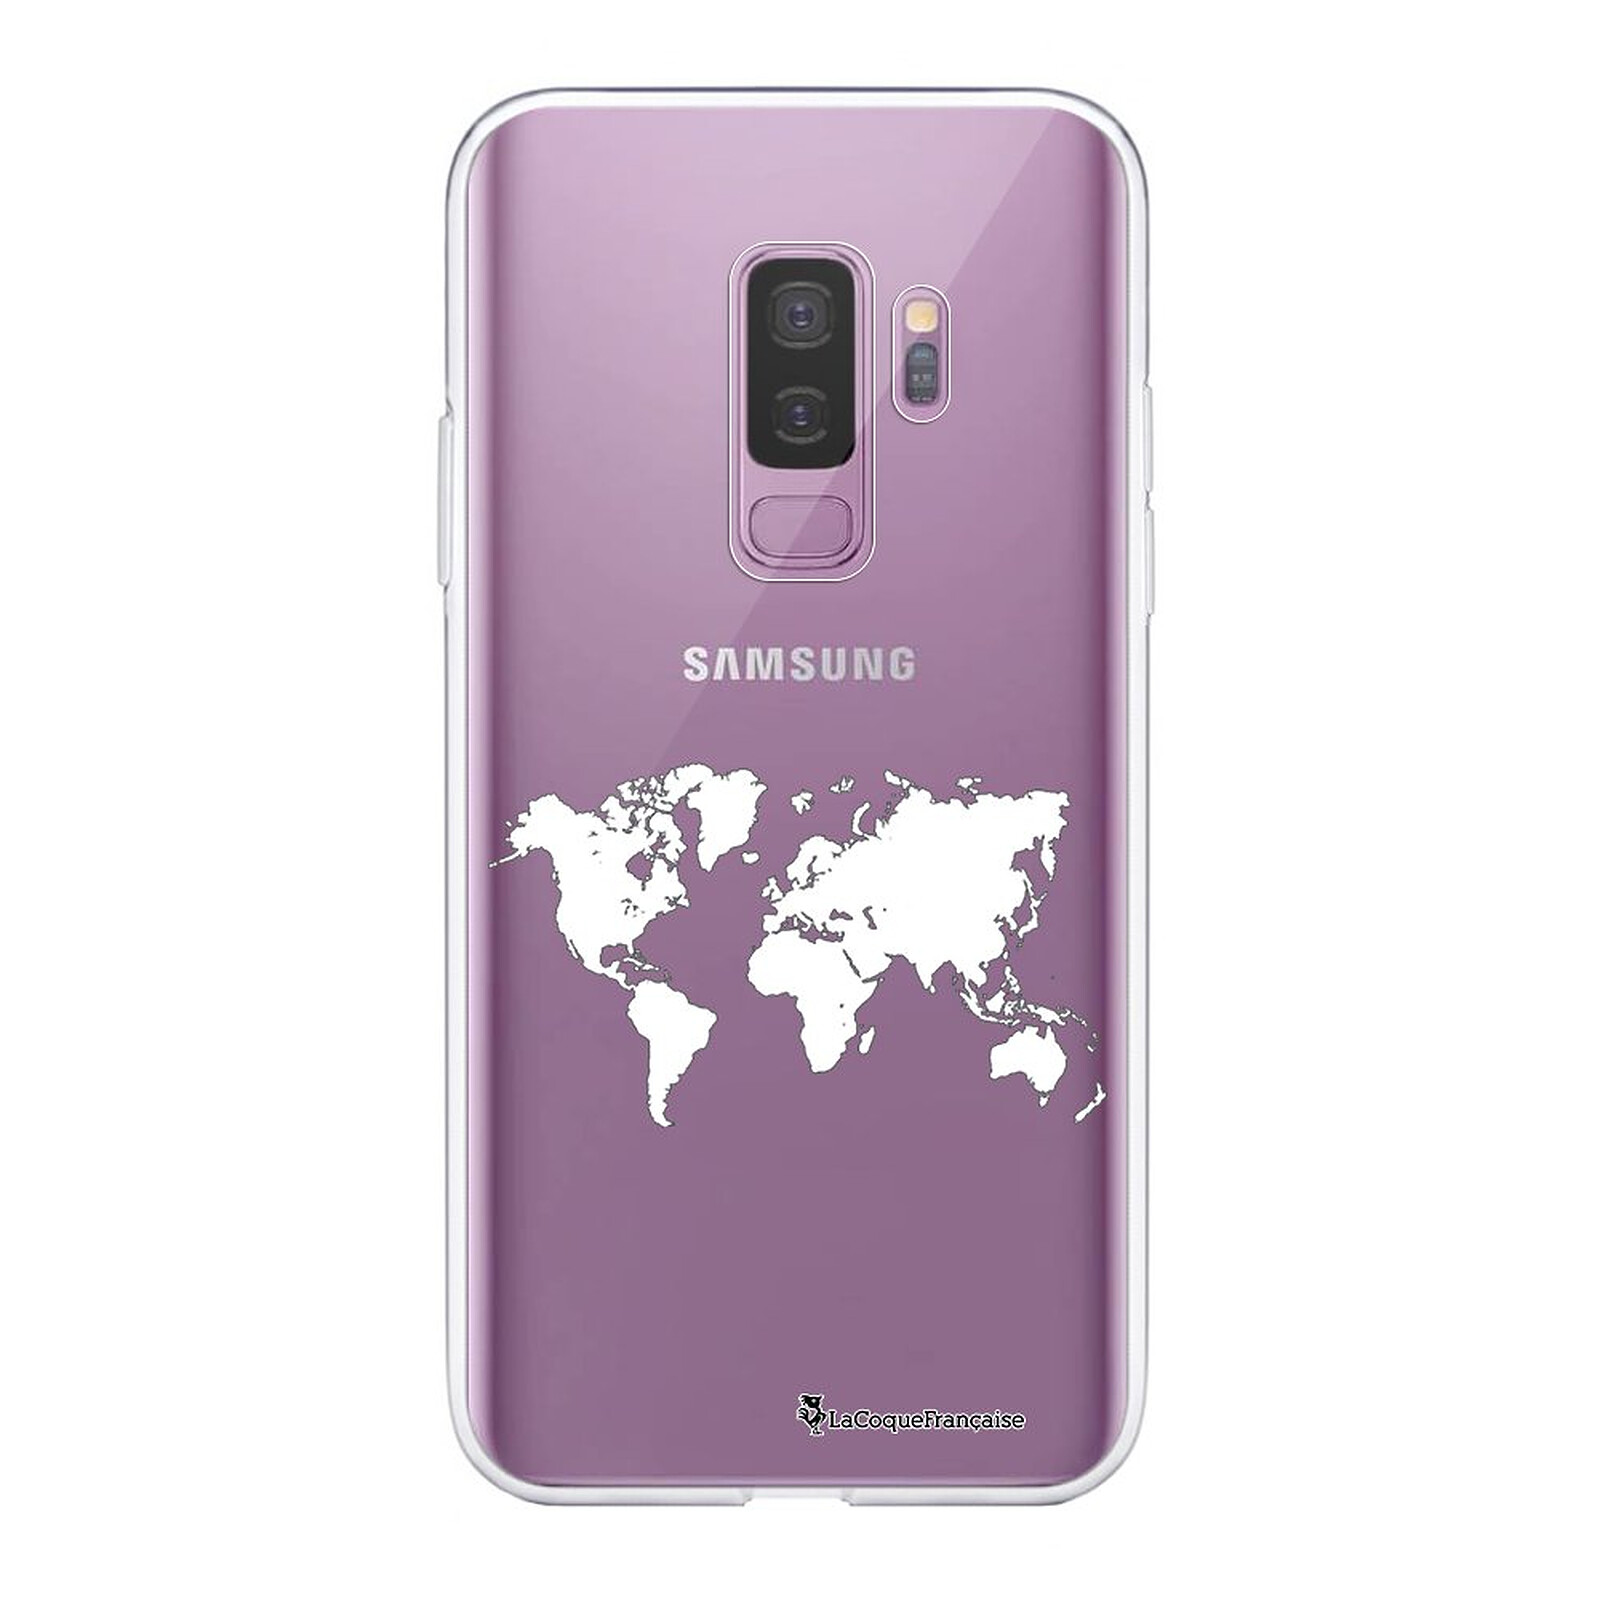 سماعة قولد سوني LA COQUE FRANCAISE Coque Samsung Galaxy S9 Plus silicone transparente Carte ultra resistant Protection housse